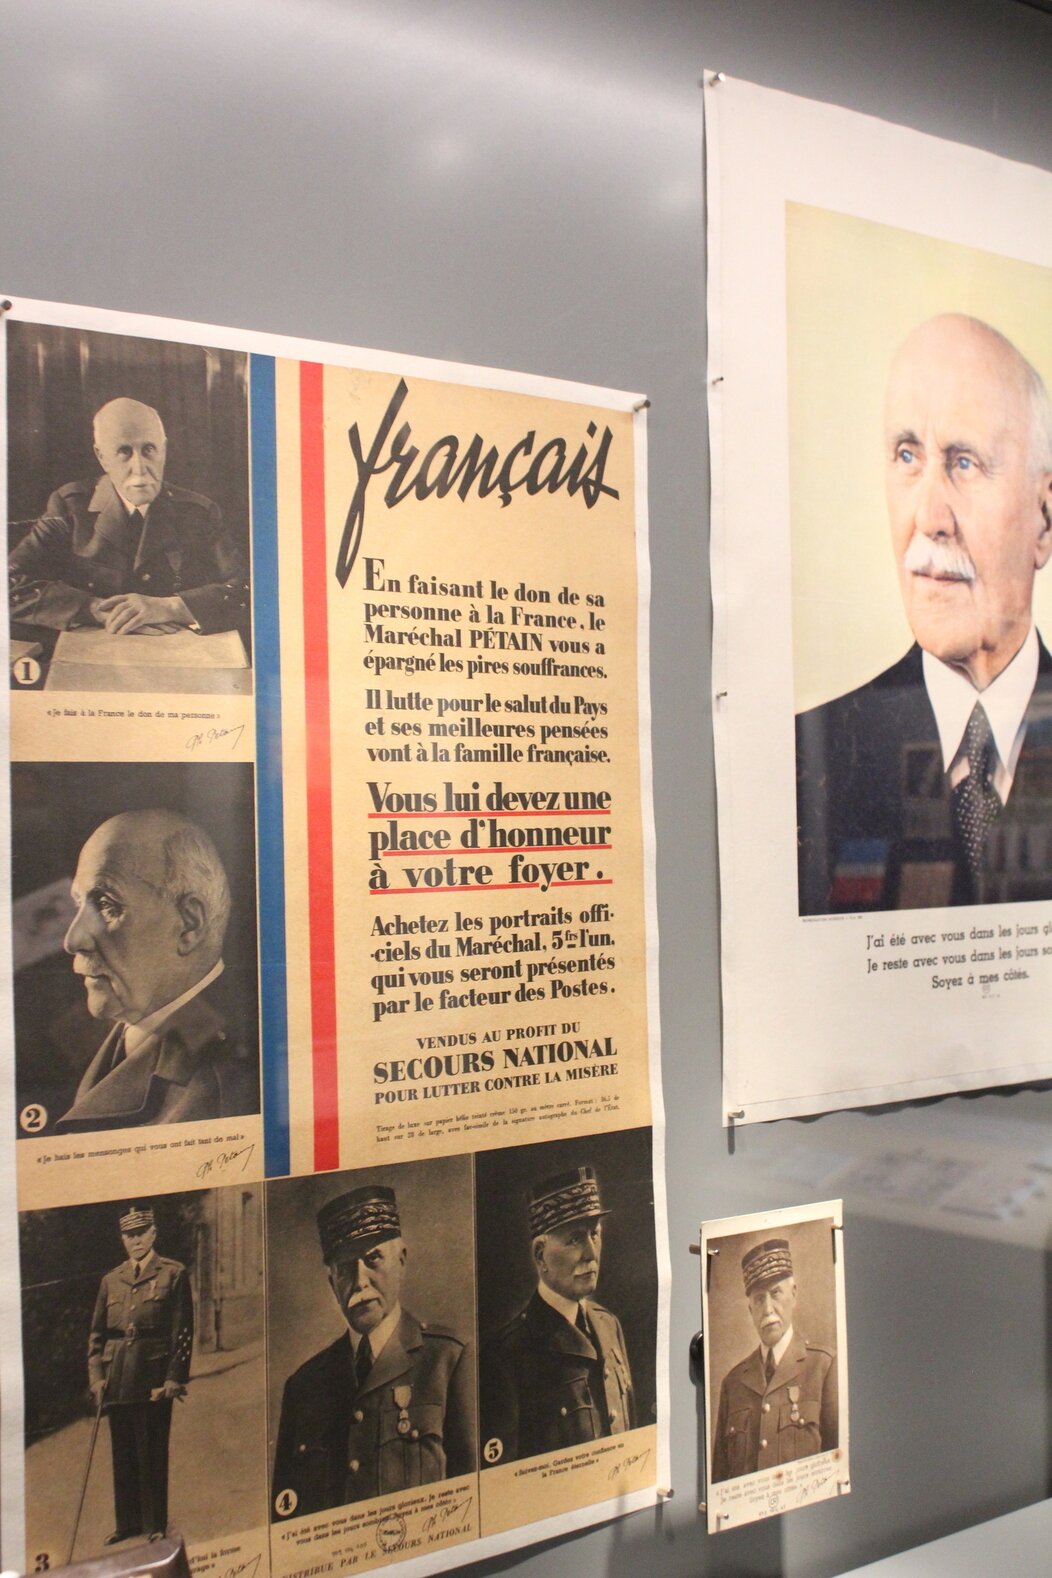 Photo d'affiche de propagande durant le régime de Vichy